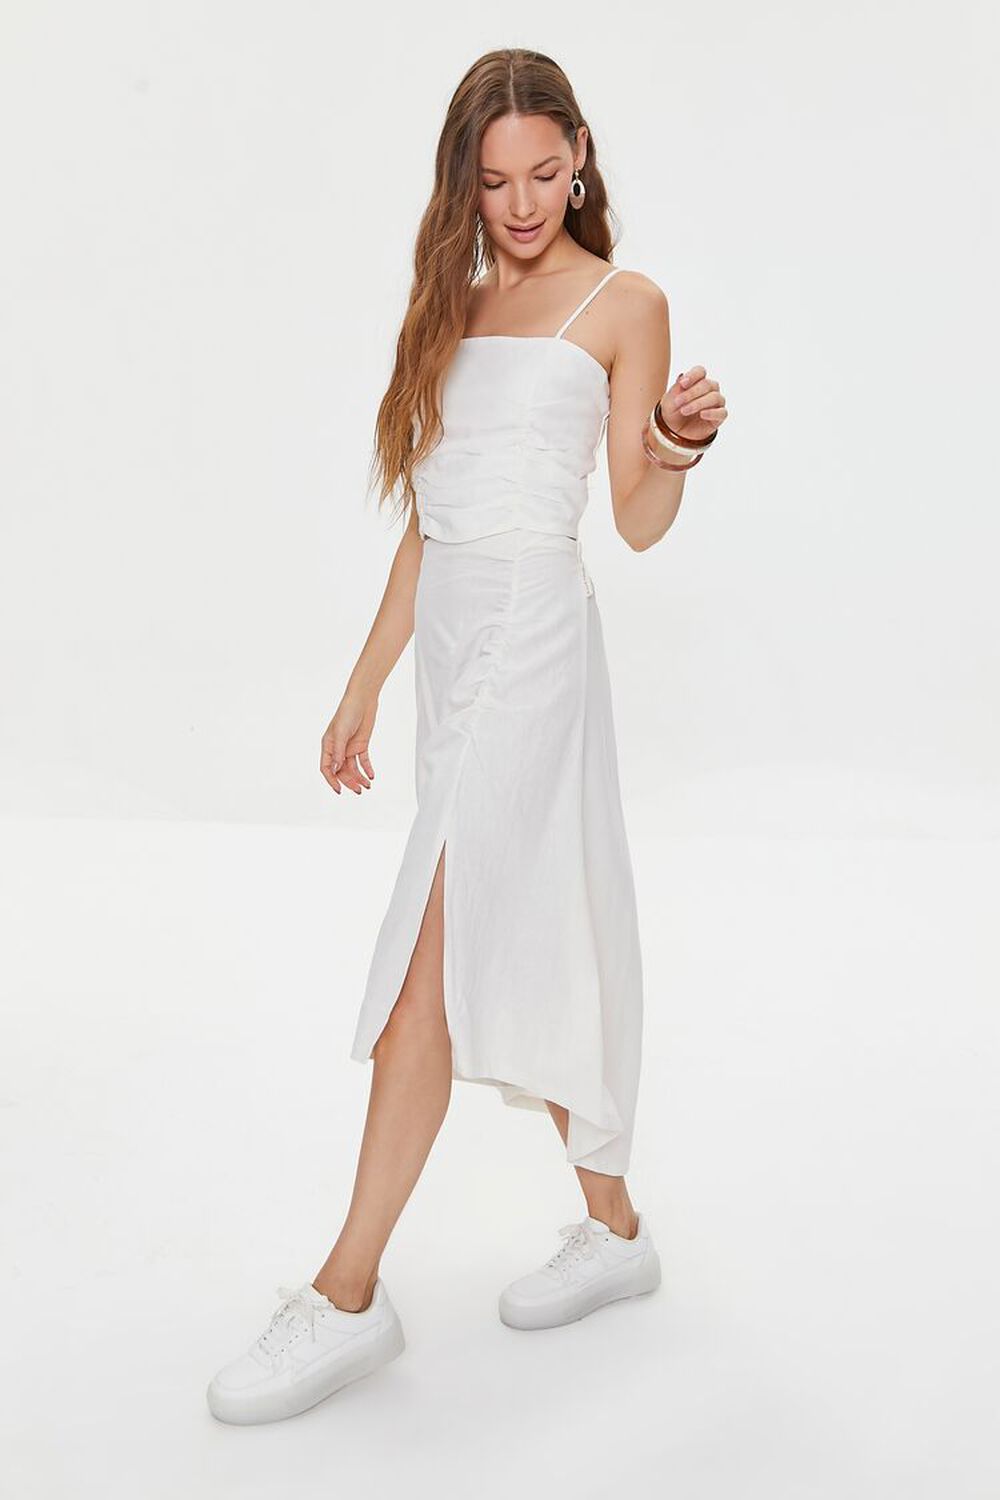 WHITE Kendall + Kylie Linen-Blend Skirt, image 1